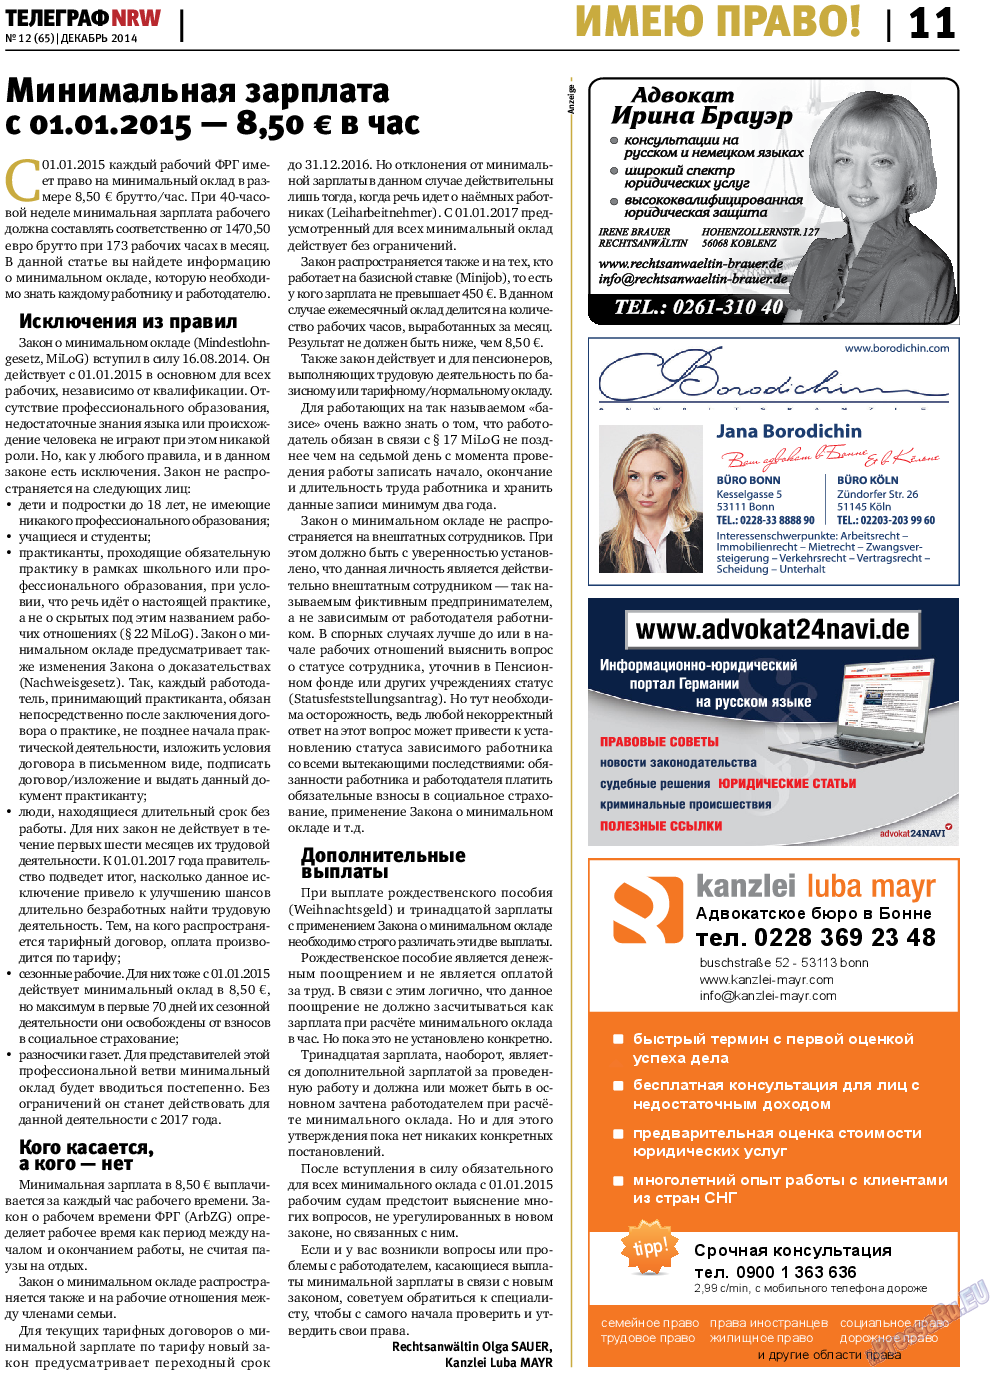 Телеграф NRW (газета). 2014 год, номер 12, стр. 11